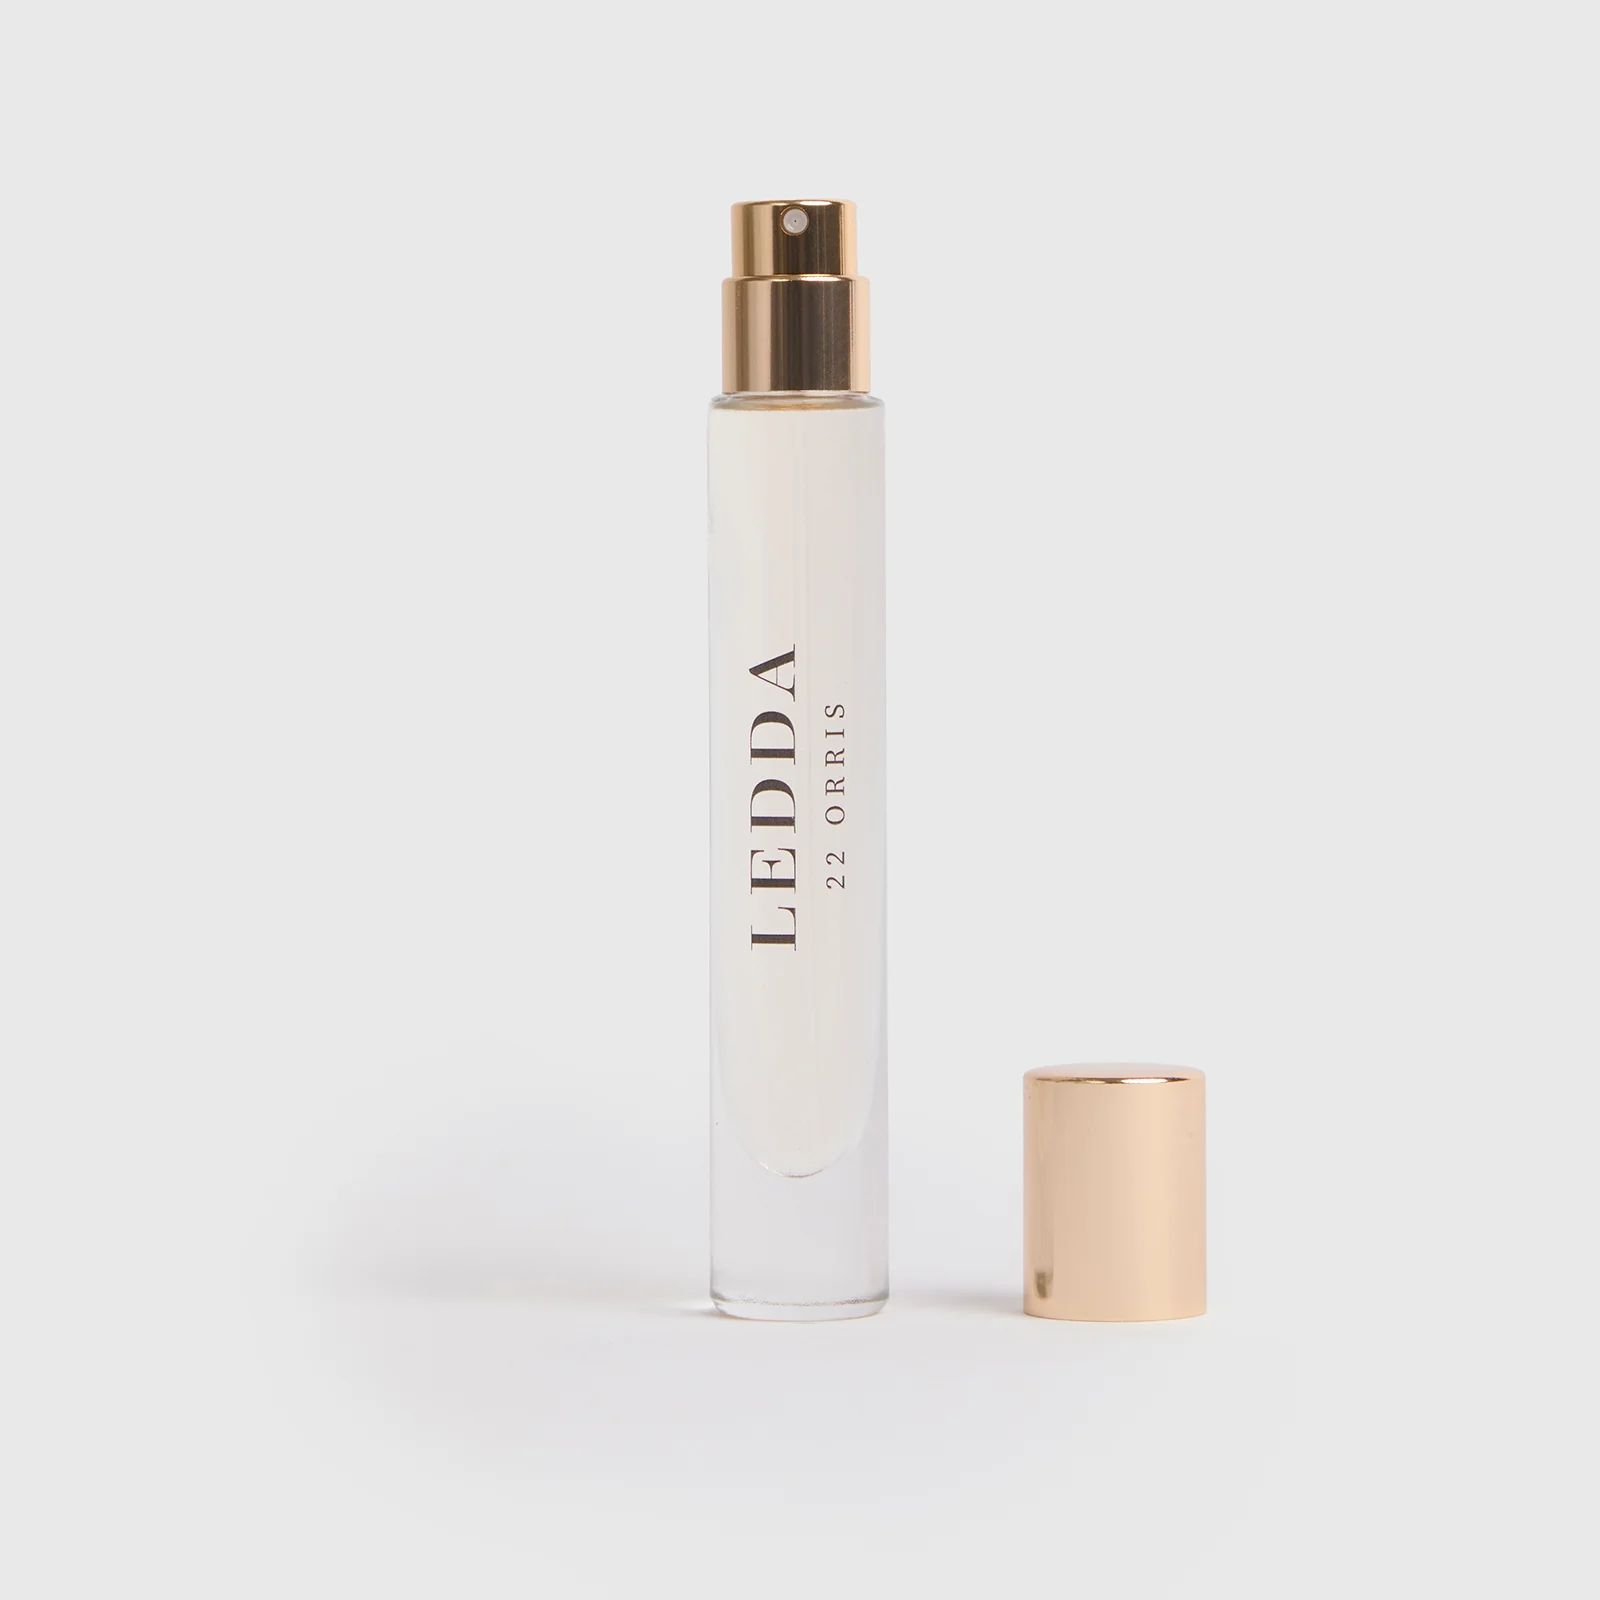 22 Orris Eau De Parfum Travel Size - 8 ml | LEDDA (US)